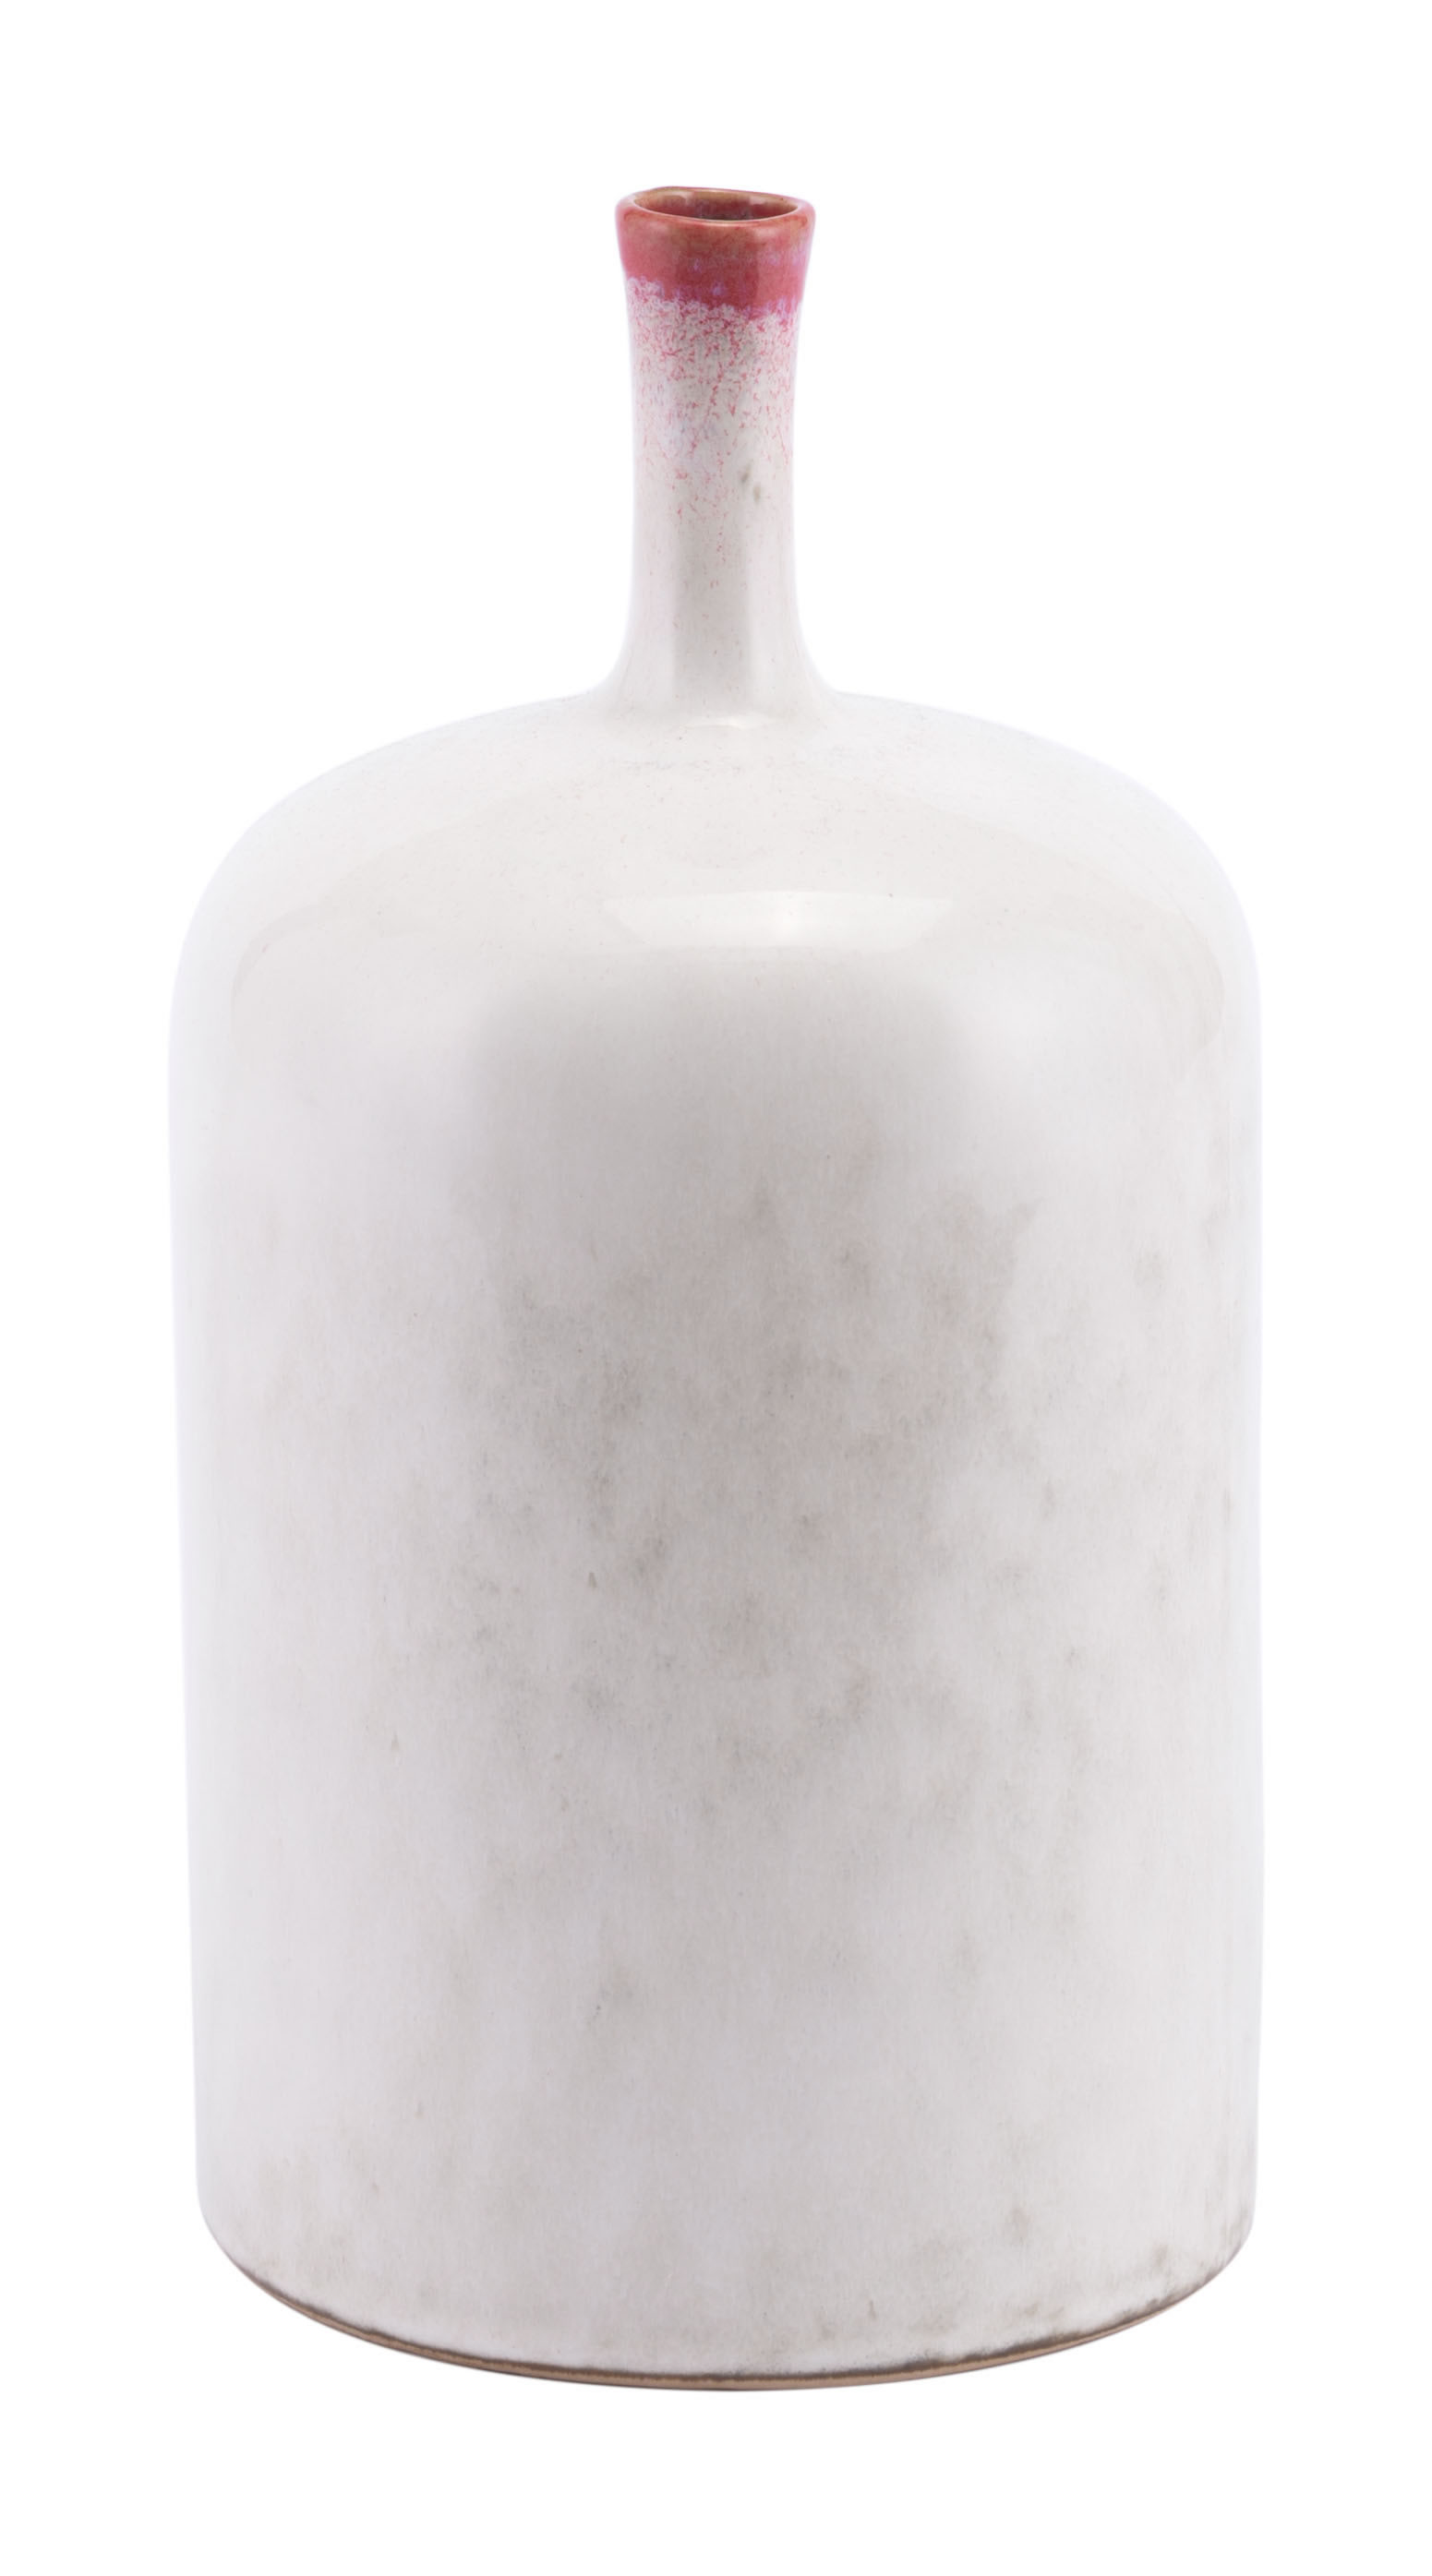 4.9" x 4.9" x 9.4" White, Porcelain, Medium Bottle